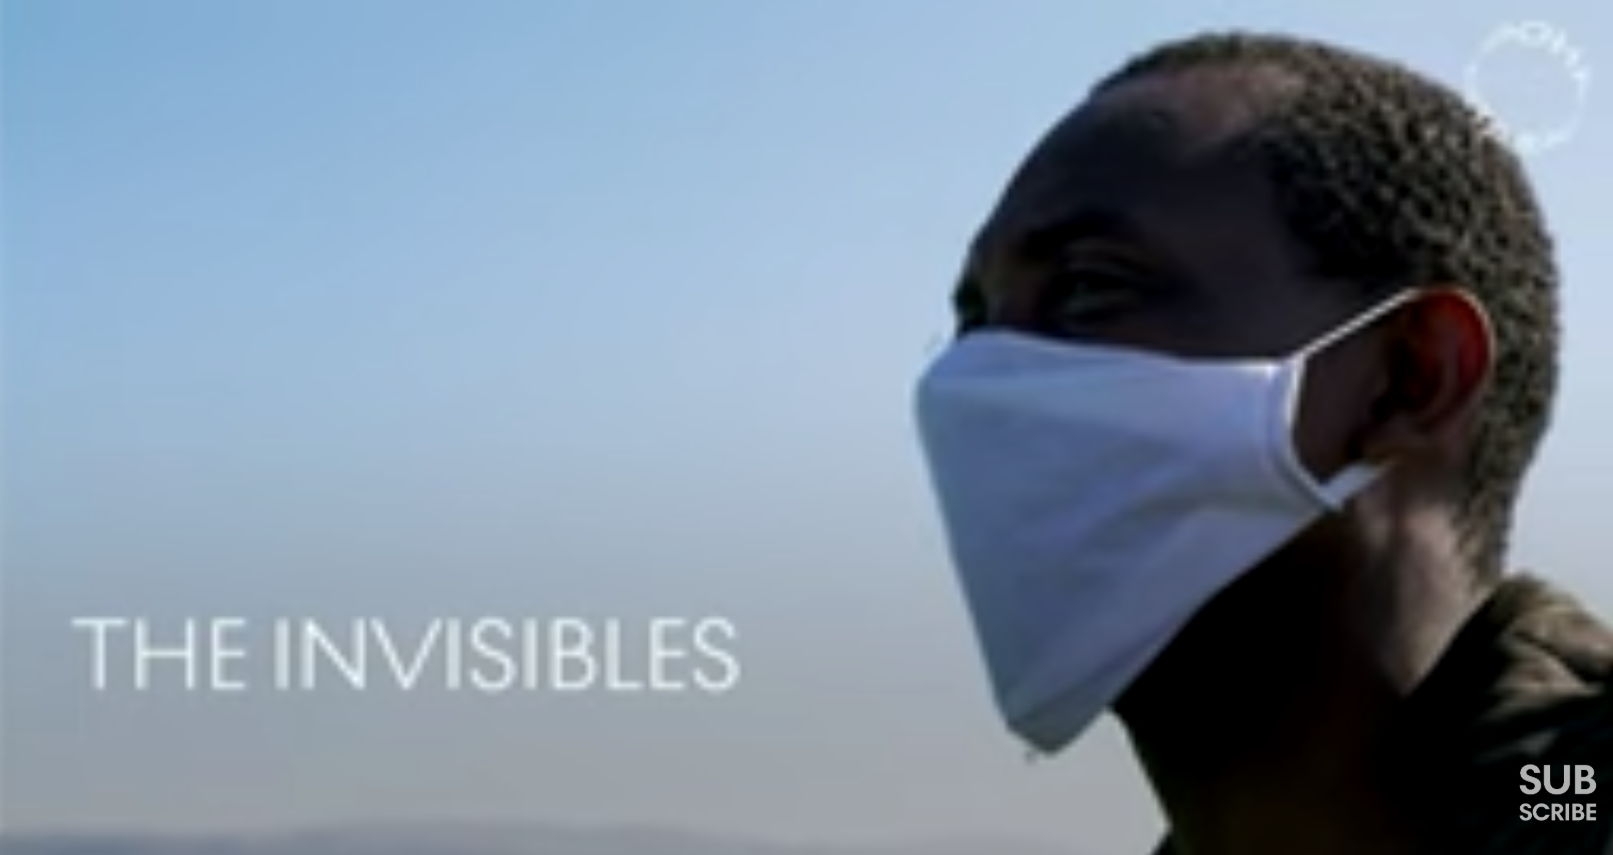 The invisibles, il documentario